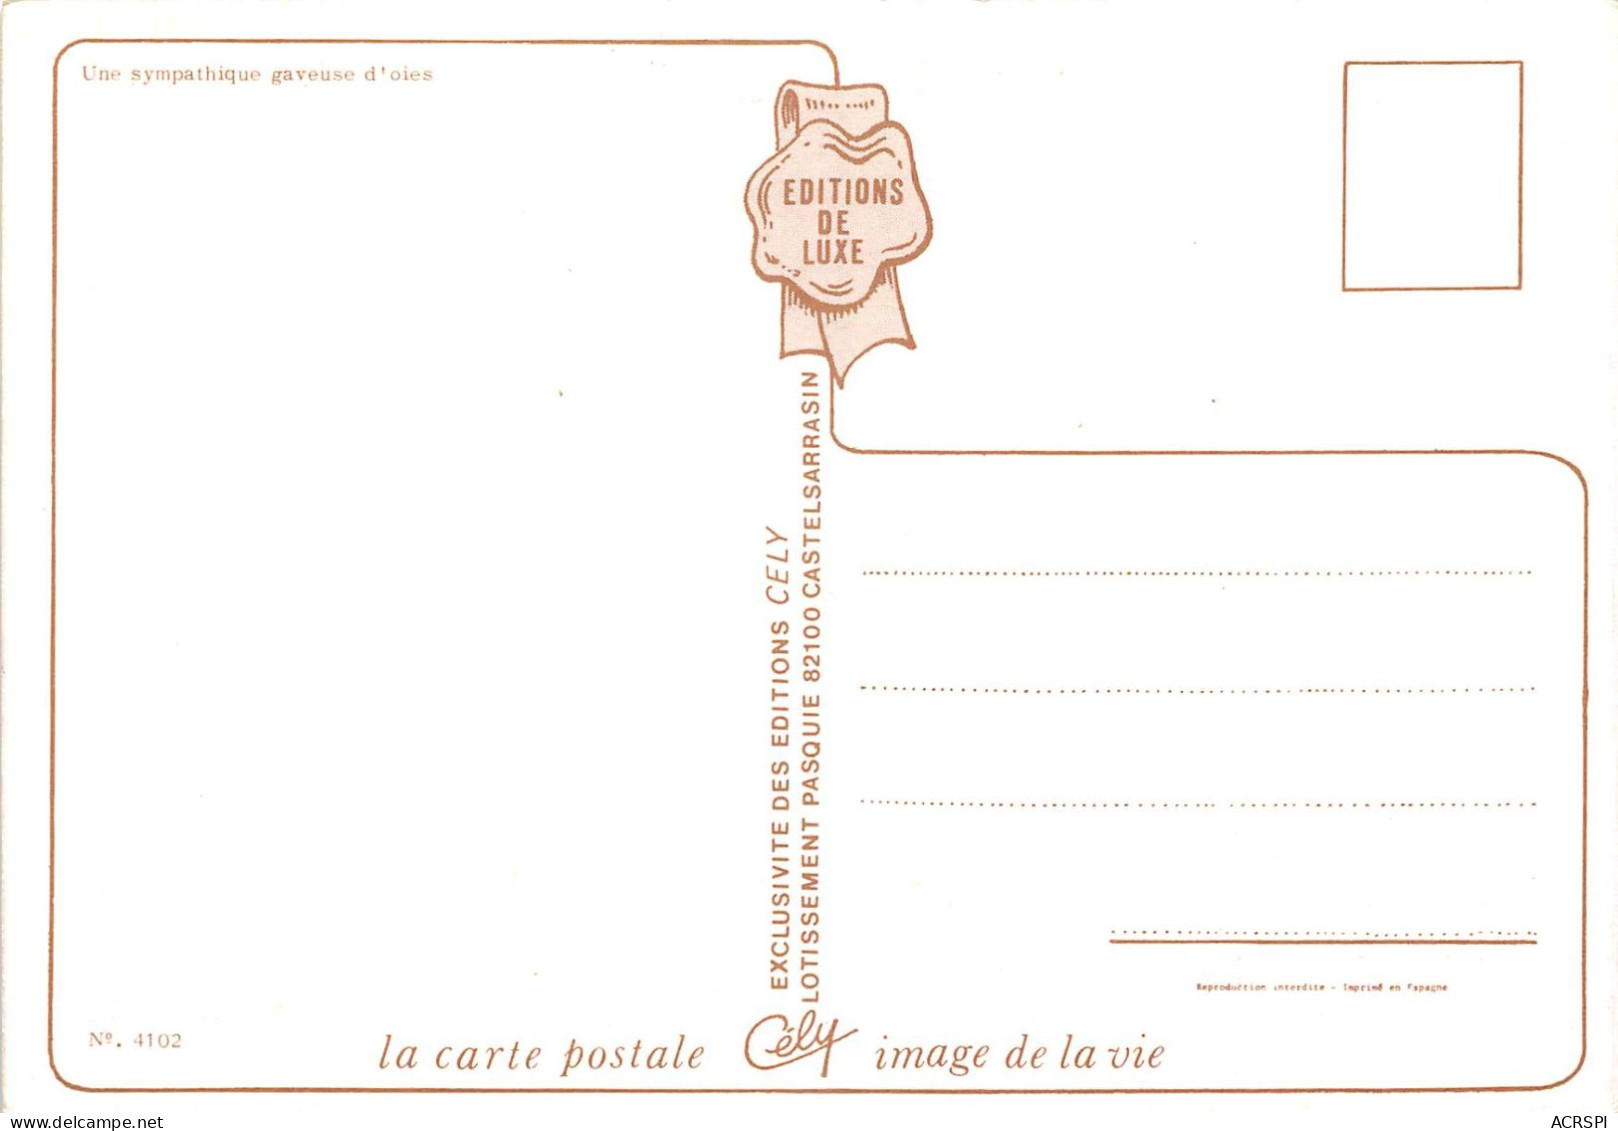 Une Sympathique Gaveuse D Oies Editions Cely Castelsarrasin 11(scan Recto-verso) MA429 - Artisanat